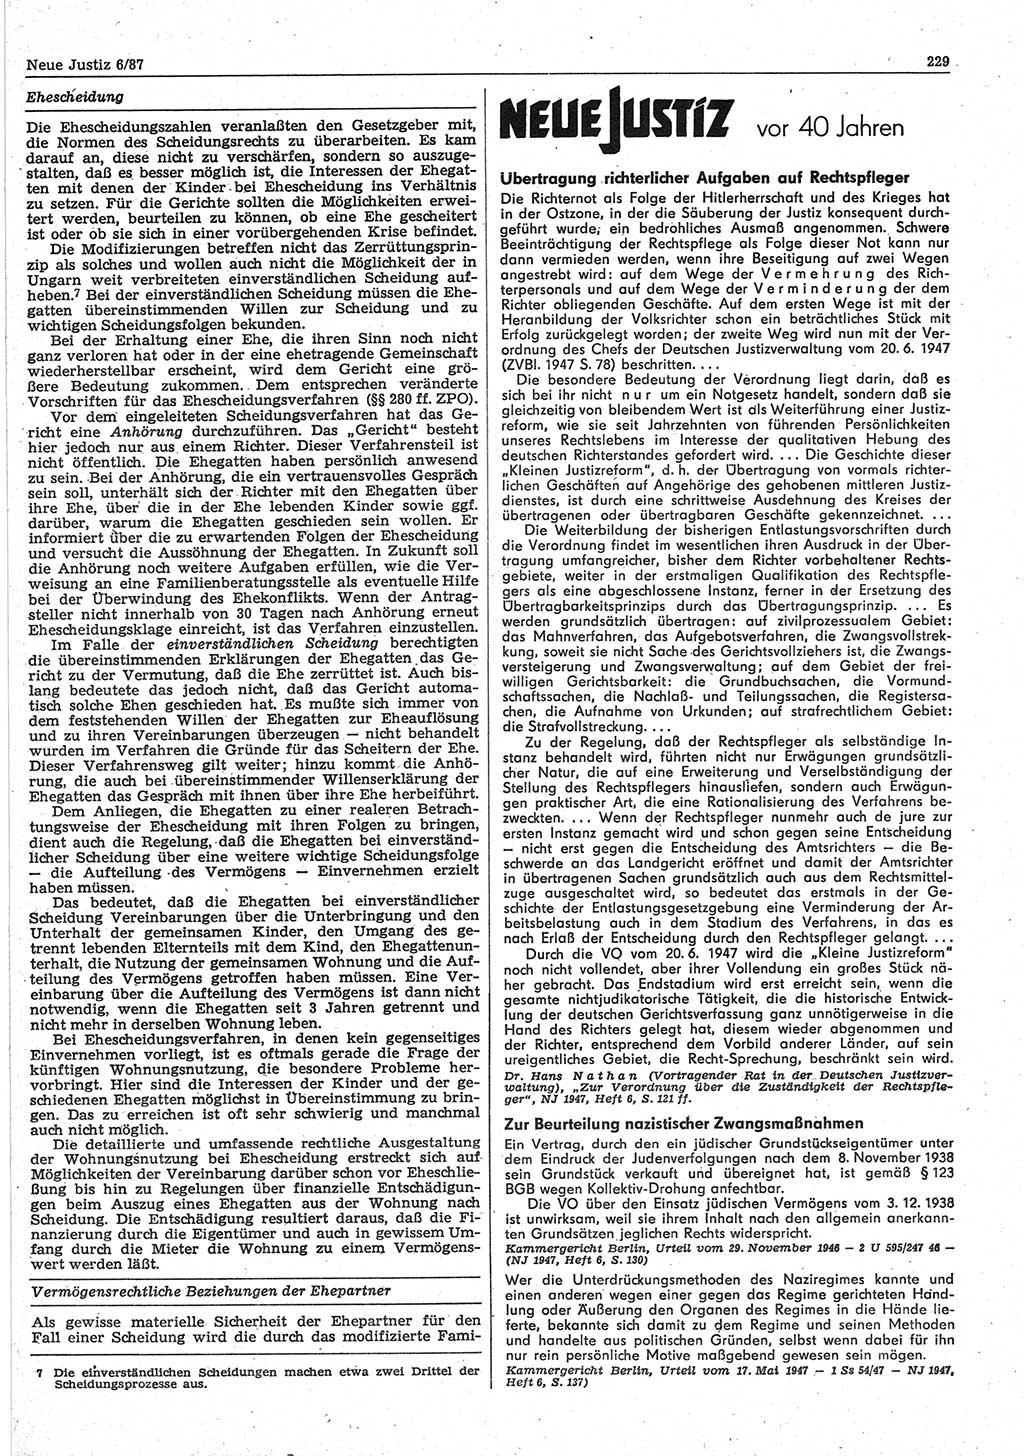 Neue Justiz (NJ), Zeitschrift für sozialistisches Recht und Gesetzlichkeit [Deutsche Demokratische Republik (DDR)], 41. Jahrgang 1987, Seite 229 (NJ DDR 1987, S. 229)